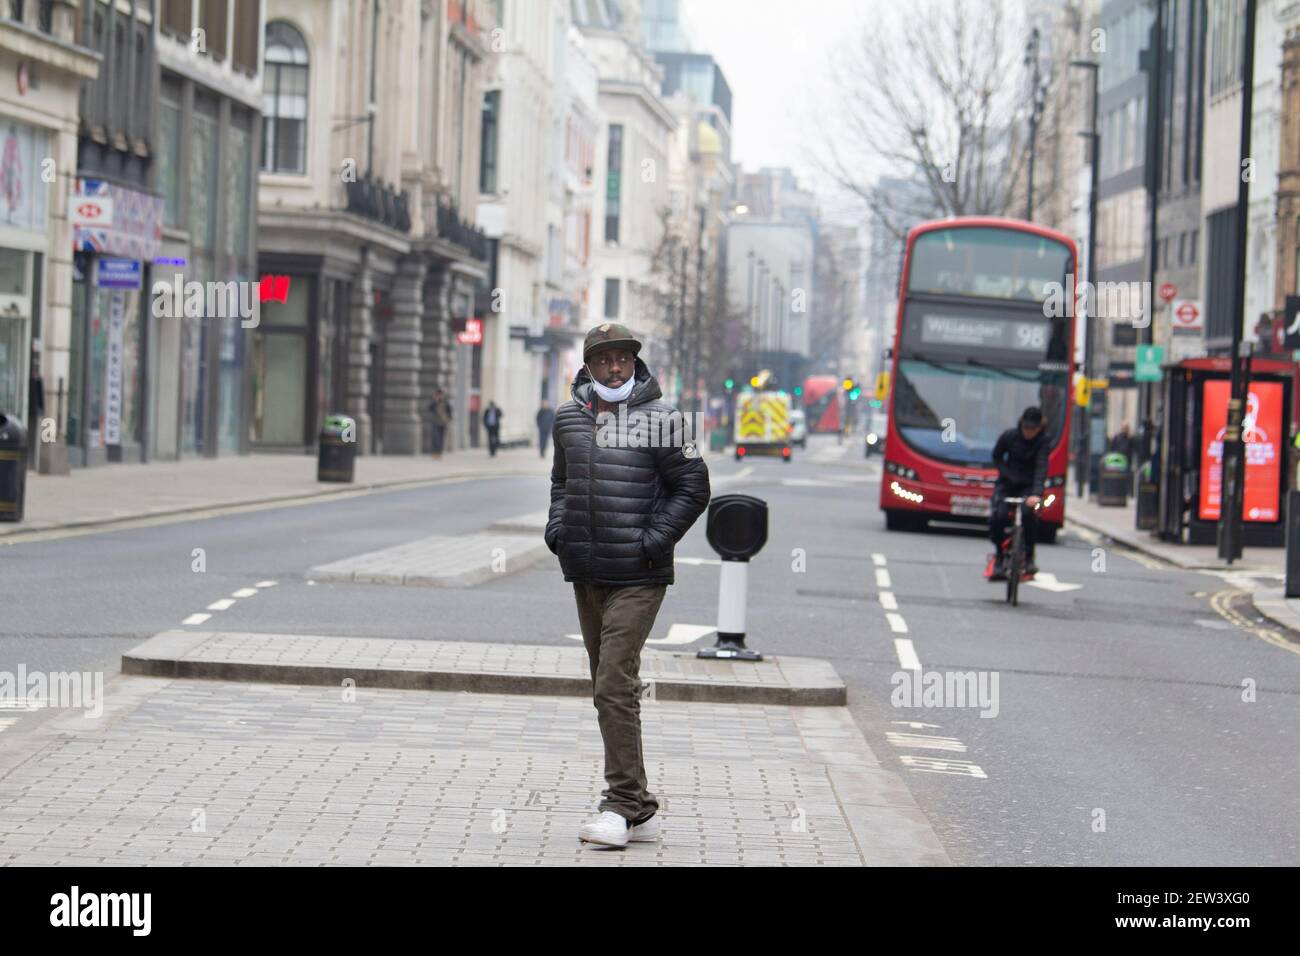 Oxford Street London, pendant le confinement pandémique du coronavirus Covid-19, Man traverse une rue exceptionnellement calme d'Oxford, portant des masques epi Banque D'Images